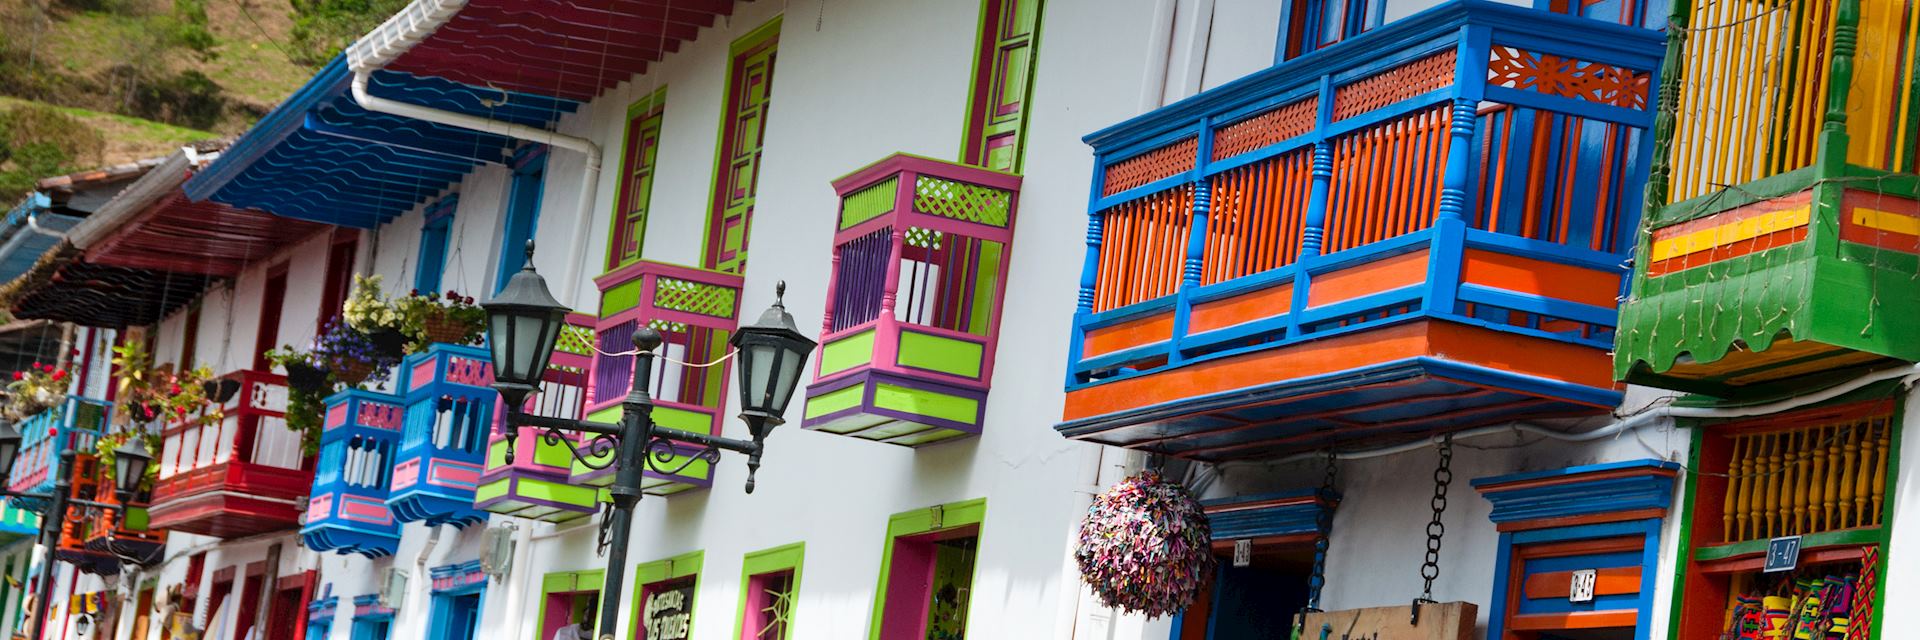 Colourful houses in Salento, near Bogotá